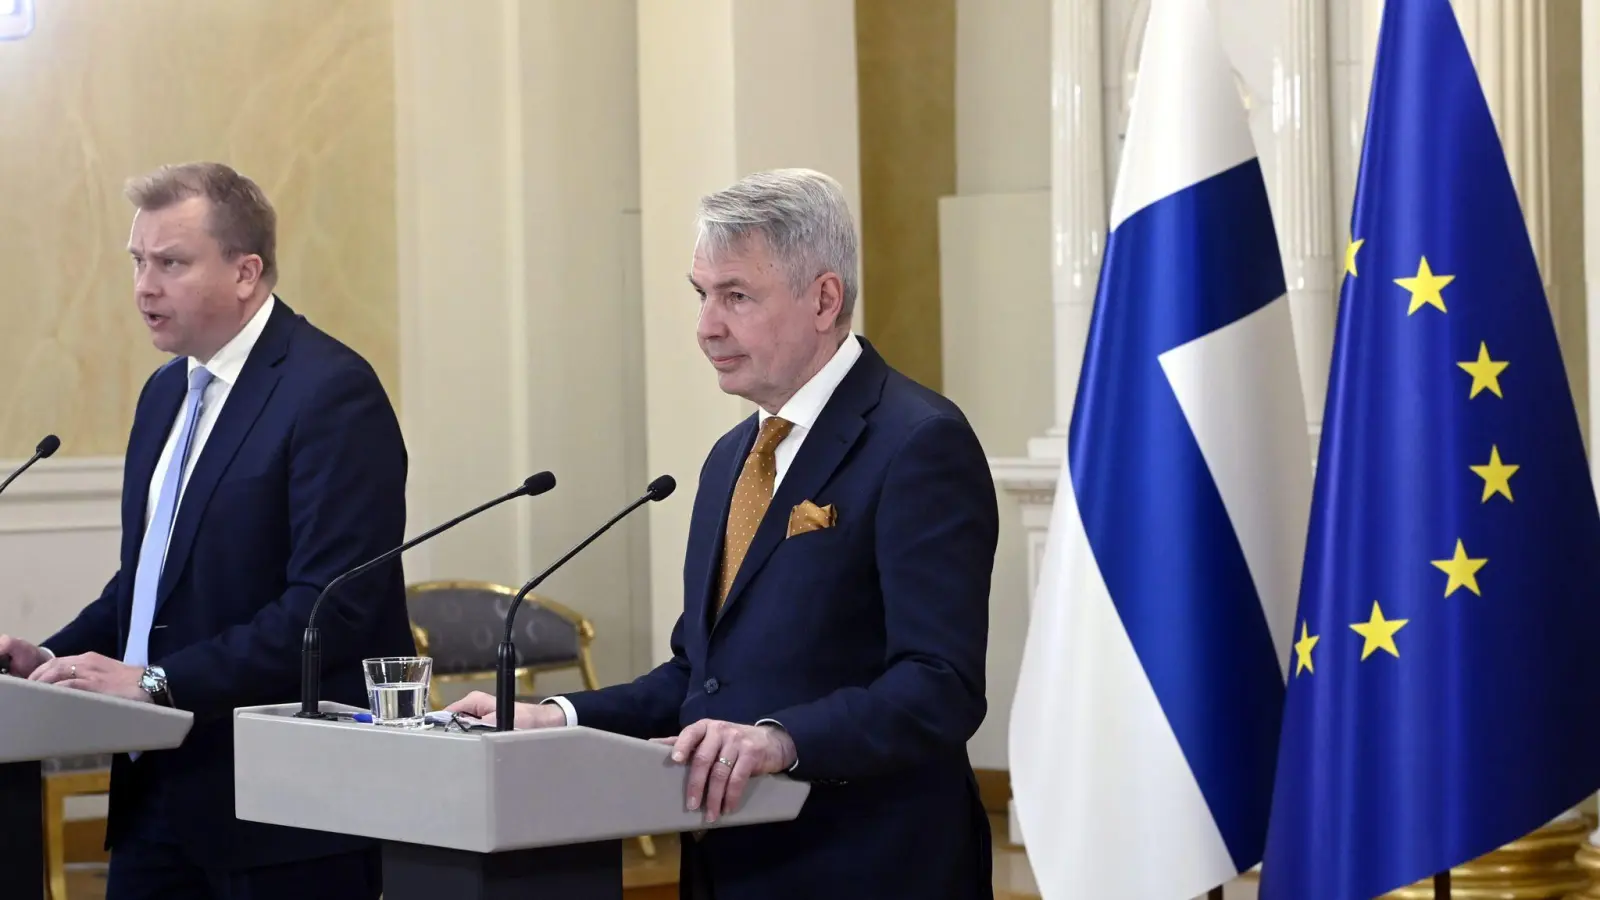 Antti Kaikkonen (l), Verteidigungsminister von Finnland, und Pekka Haavisto, Außenminister von Finnland, sprechen auf der Pressekonferenz zu den sicherheitspolitischen Entscheidungen Finnlands im Präsidentenpalast. (Foto: Heikki Saukkomaa/Lehtikuva/dpa)